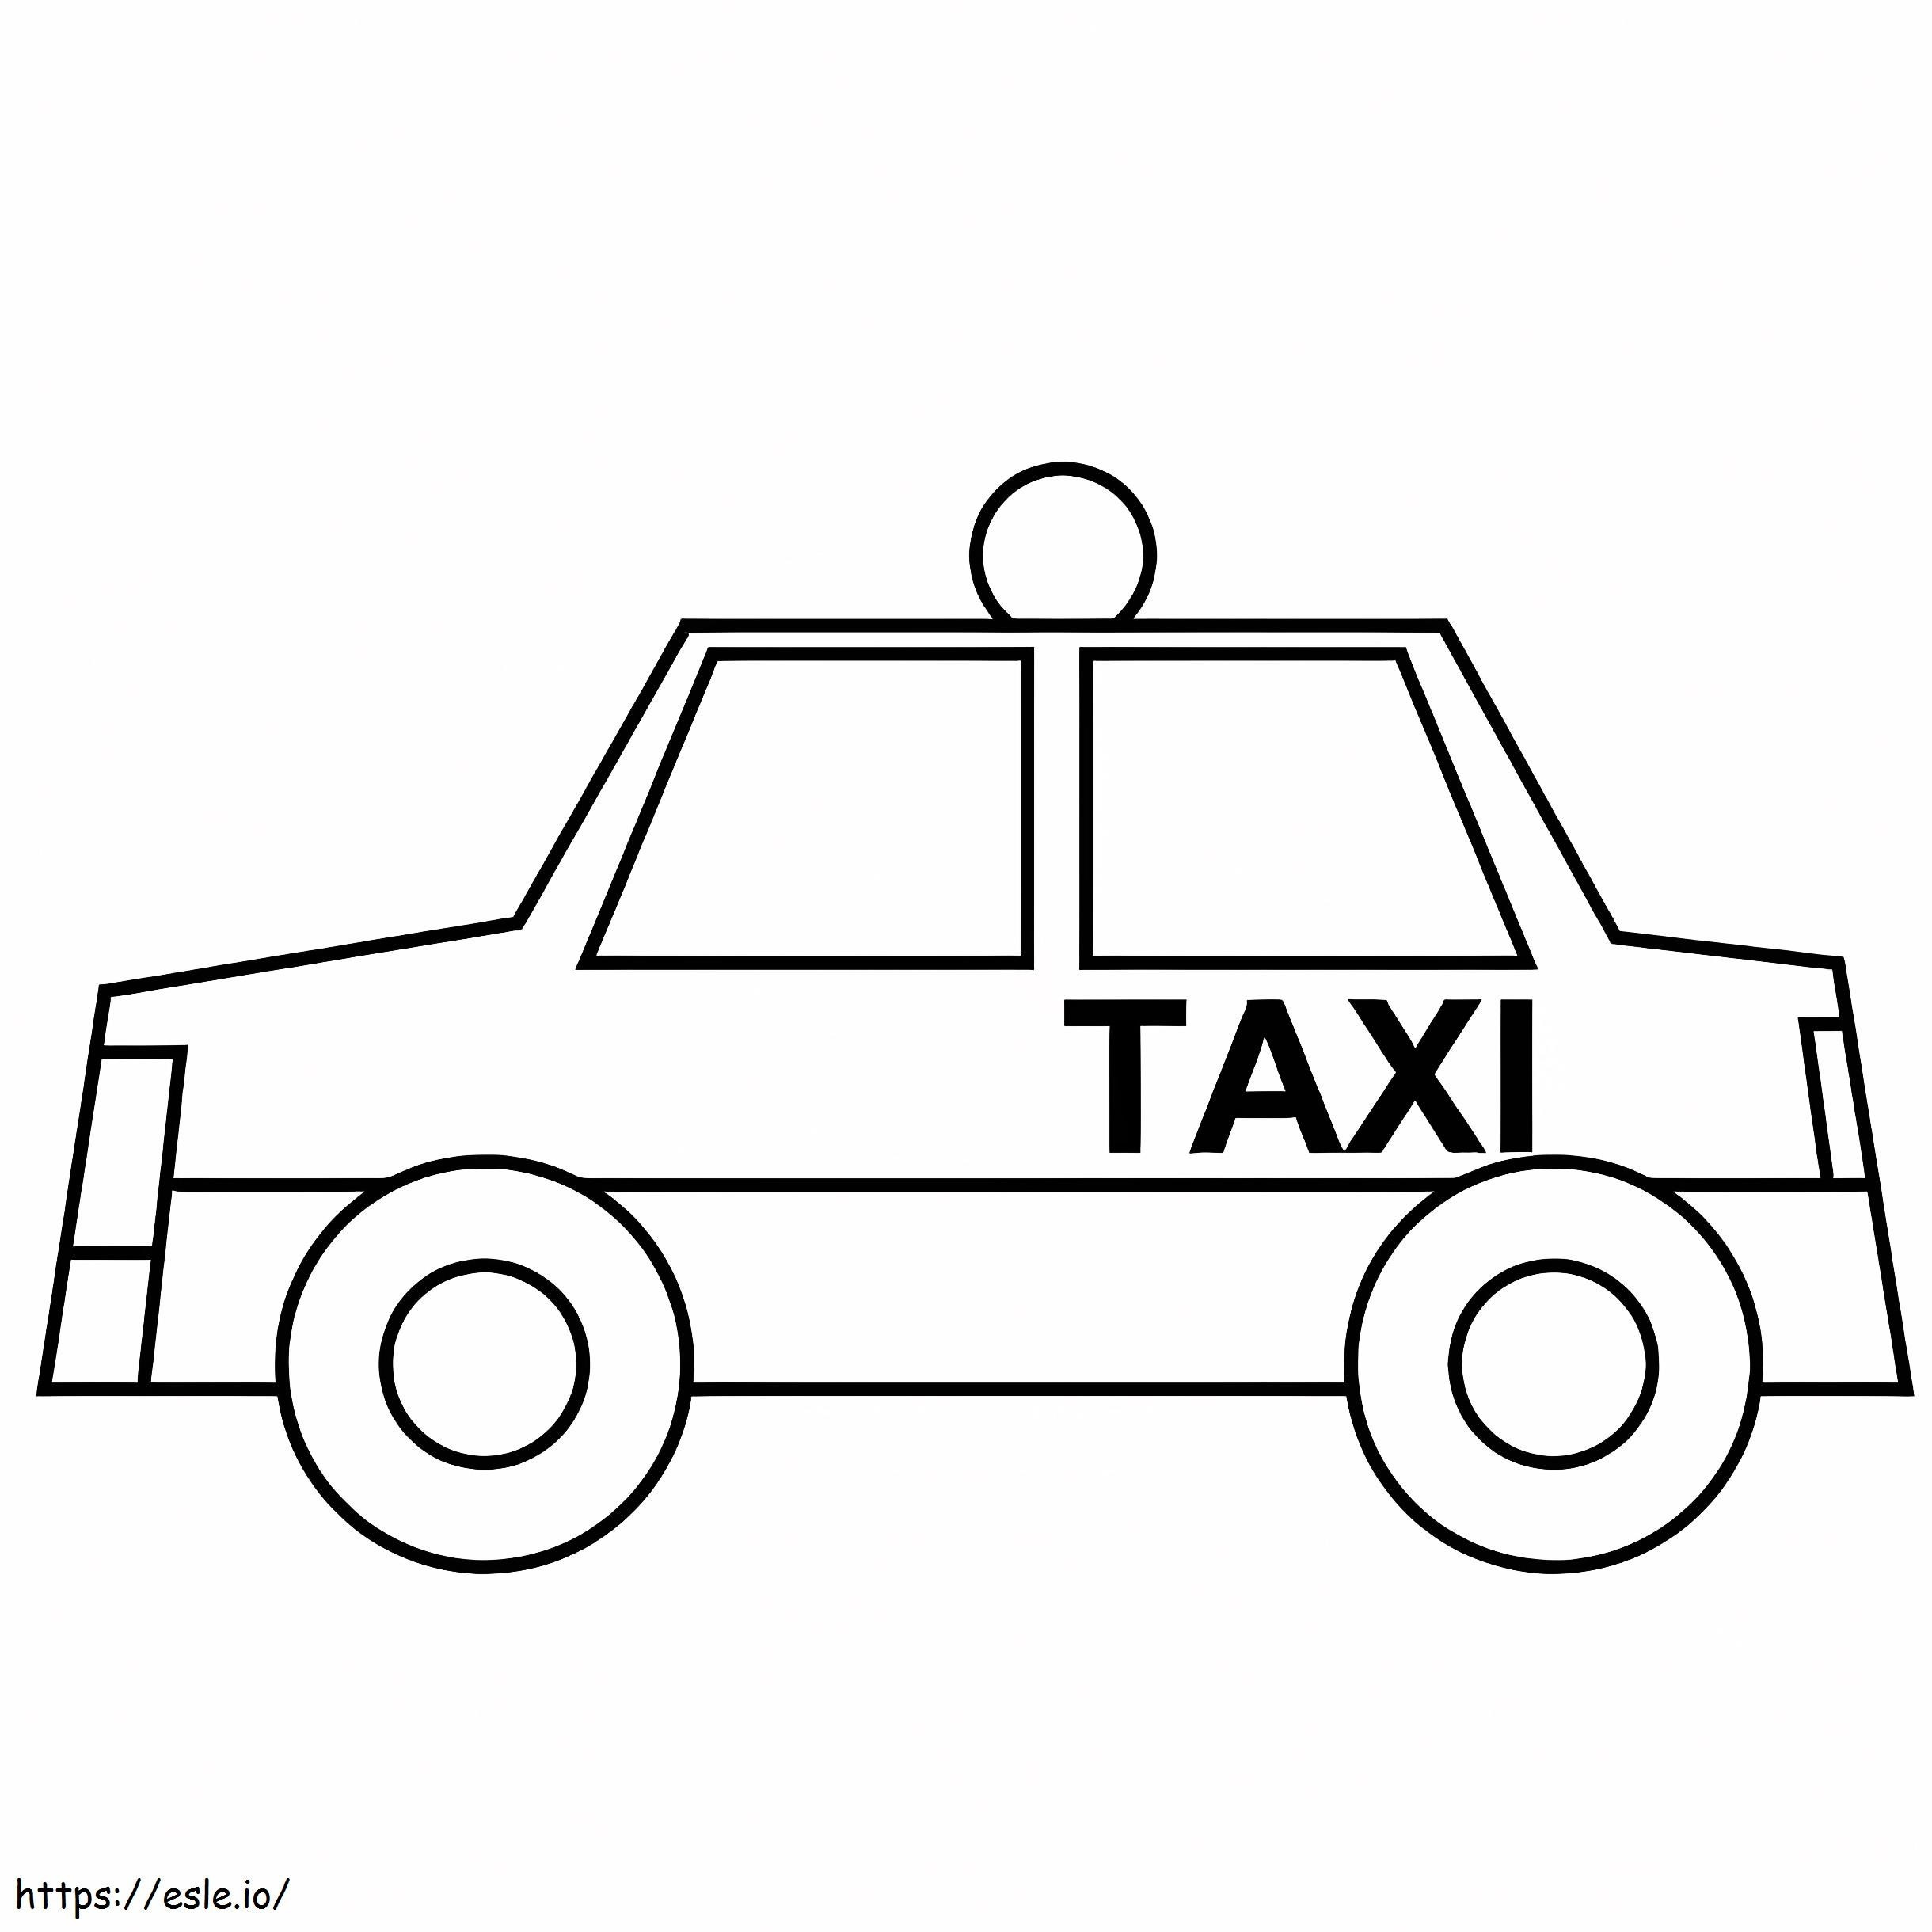 taxi sencillo para colorear